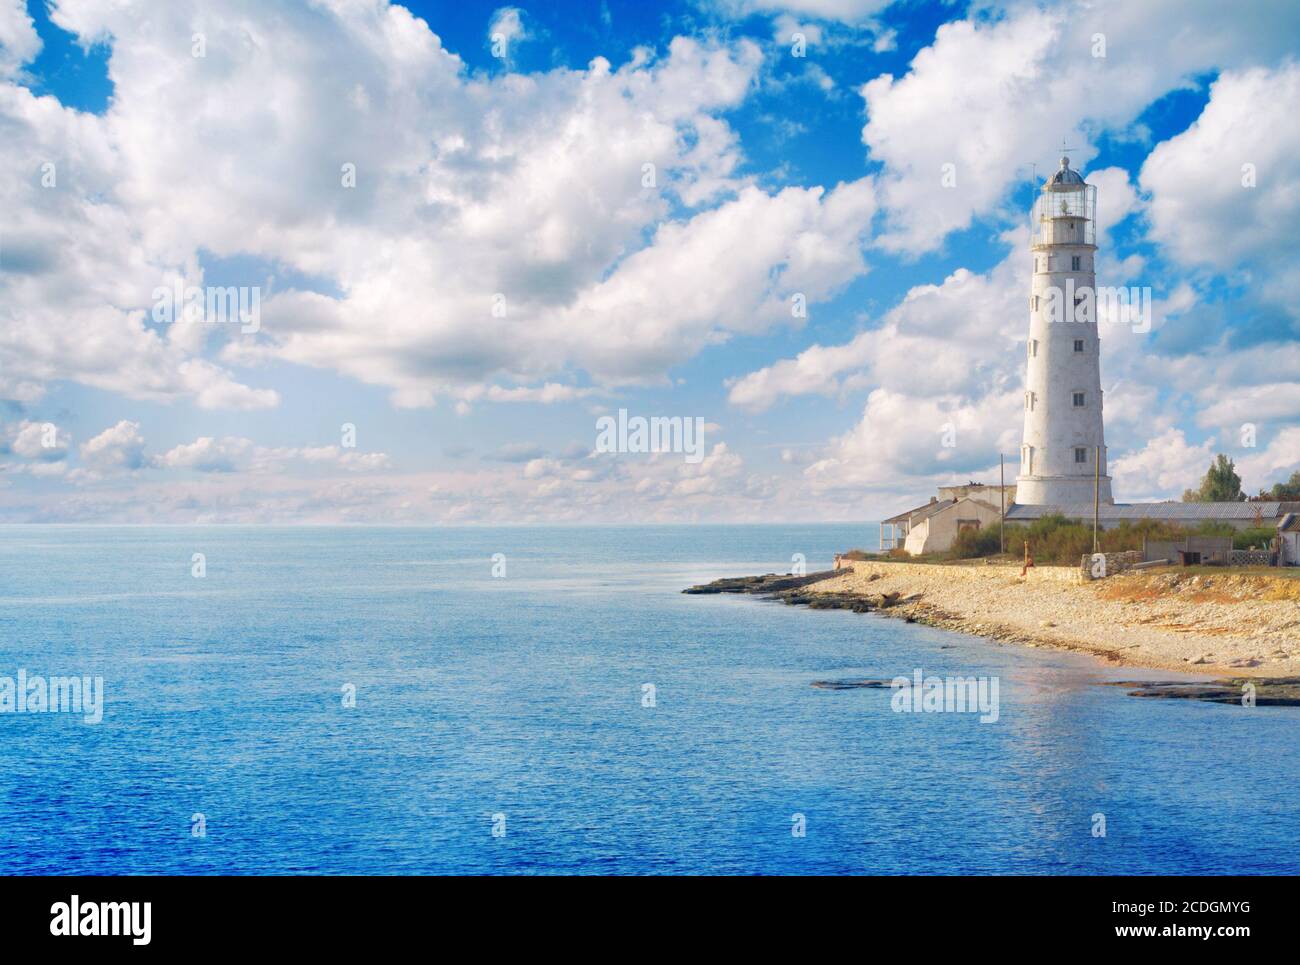 Old lighthouse on sea coast Stock Photo